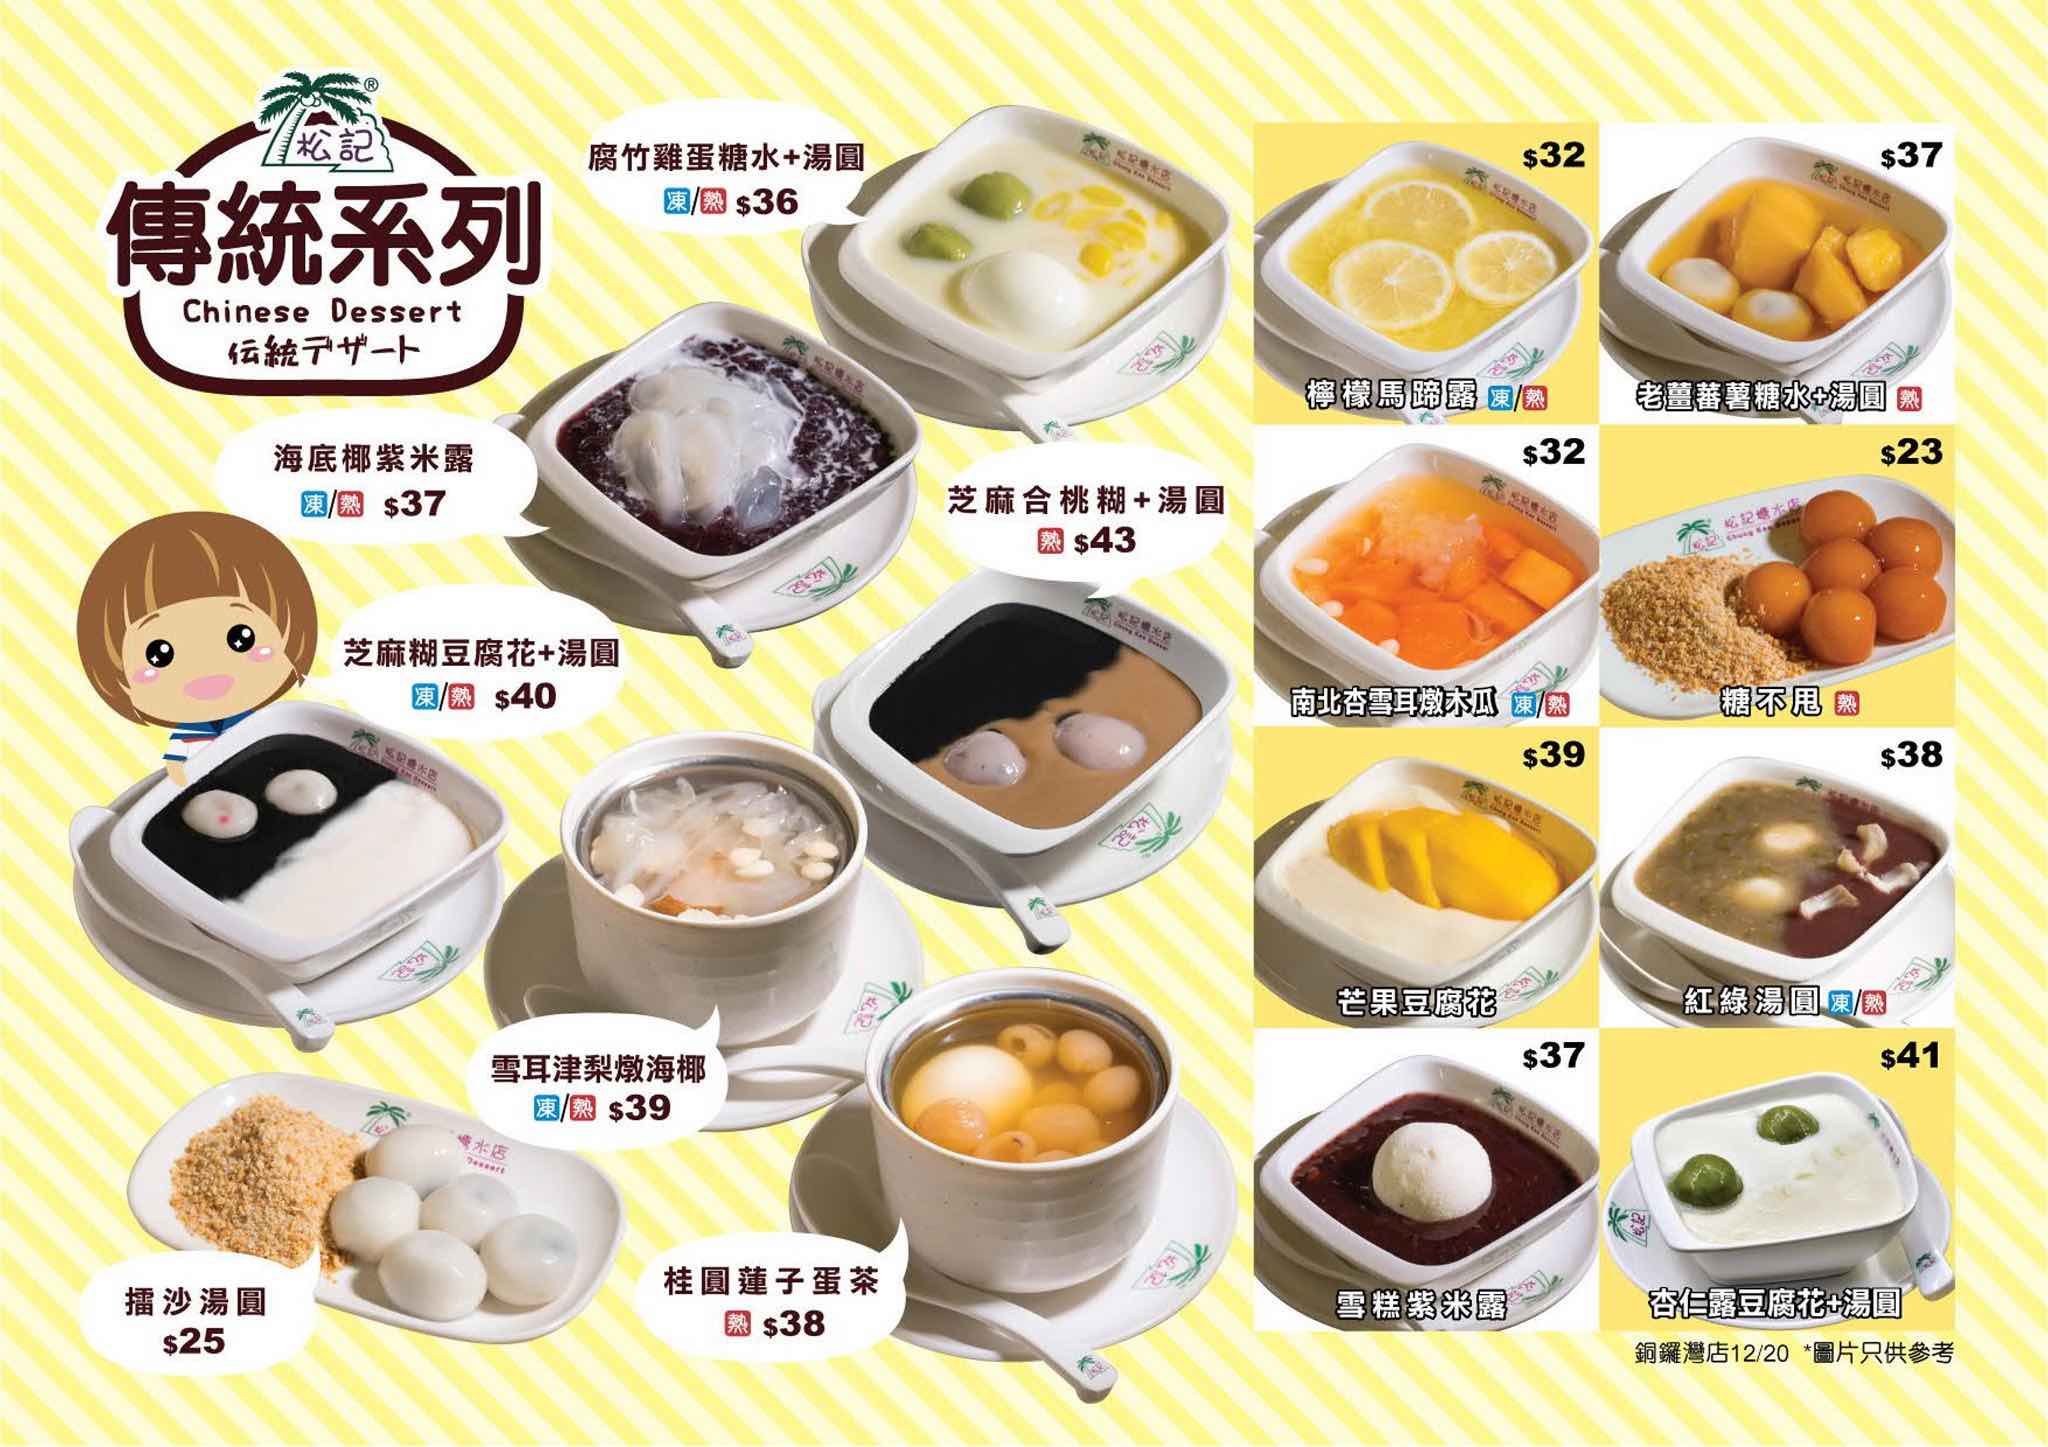 松記糖水店 ChungKee Dessert的特許經營香港區加盟店項目6